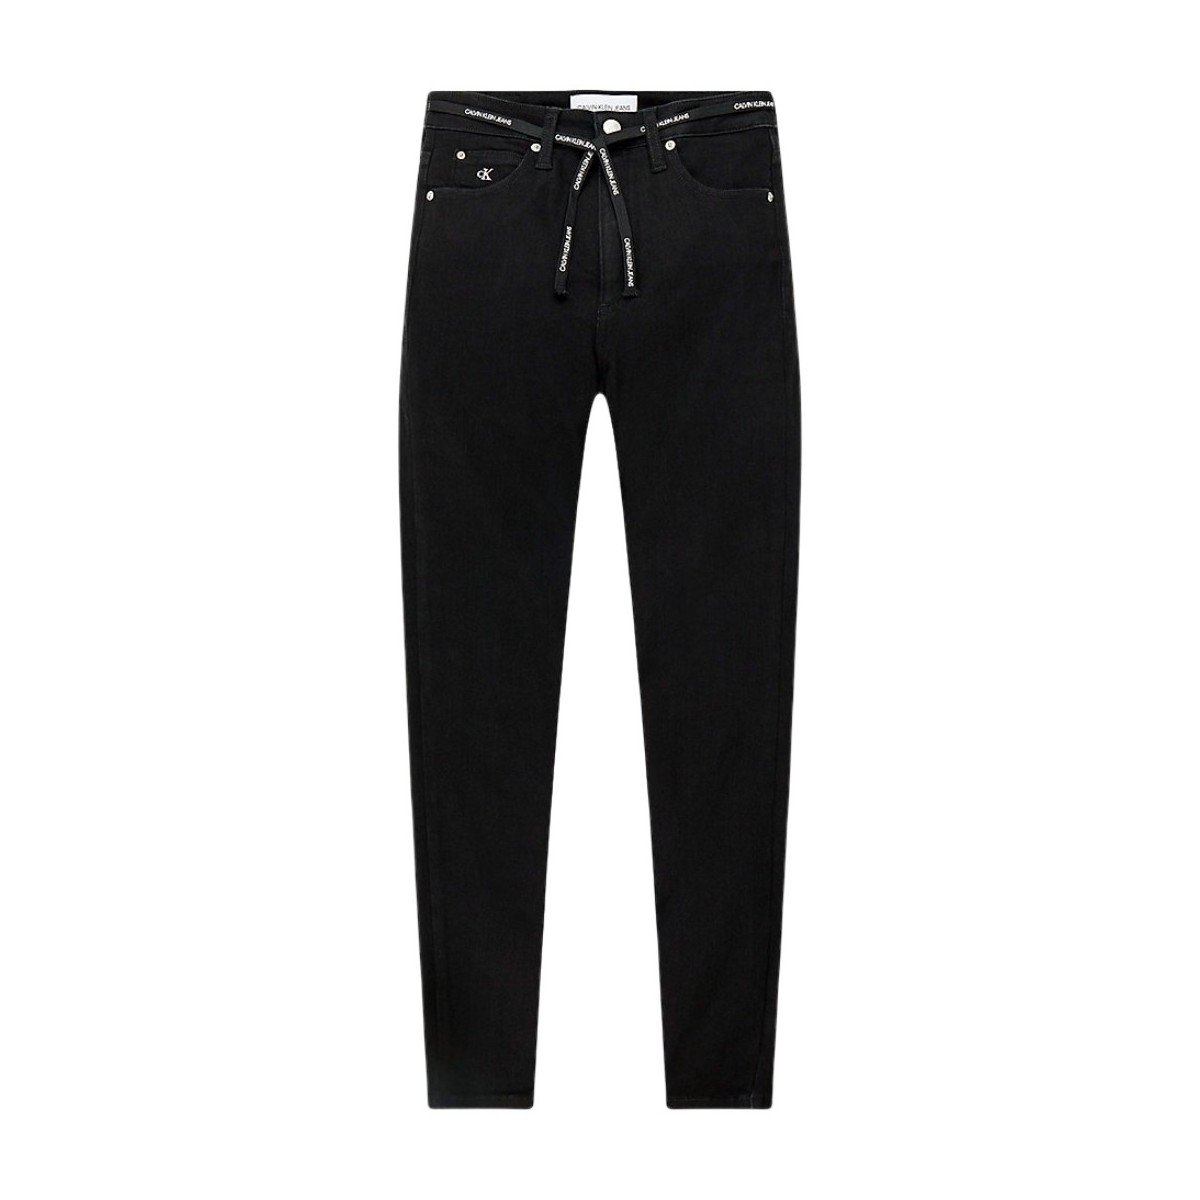 Vêtements Femme Maillots / Shorts de bain Calvin Klein Jeans Jean  Ref 53666 1BY Noir